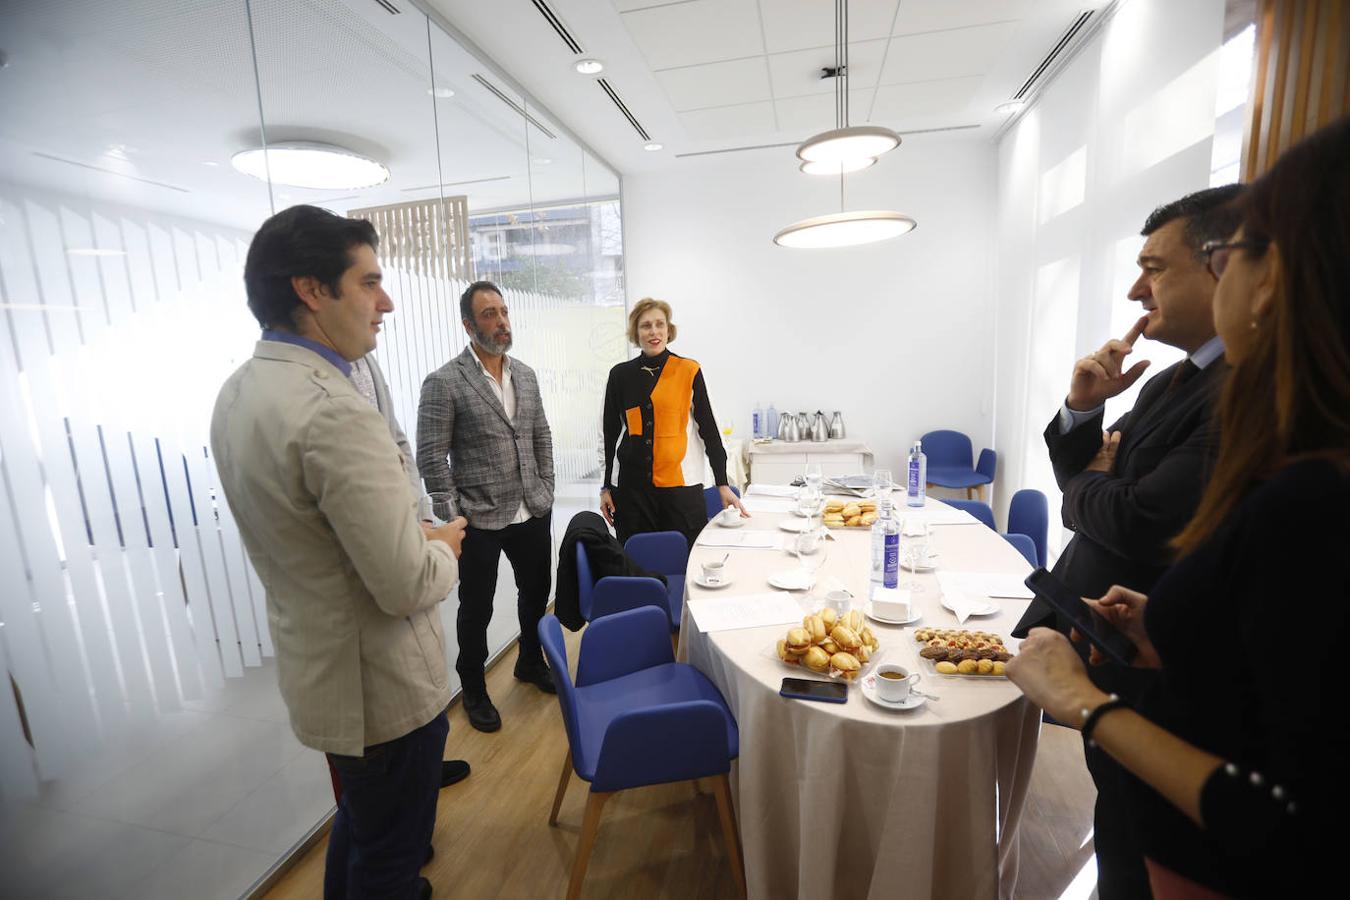 El desayuno informativo sobre la digitalización en Córdoba, en imágenes